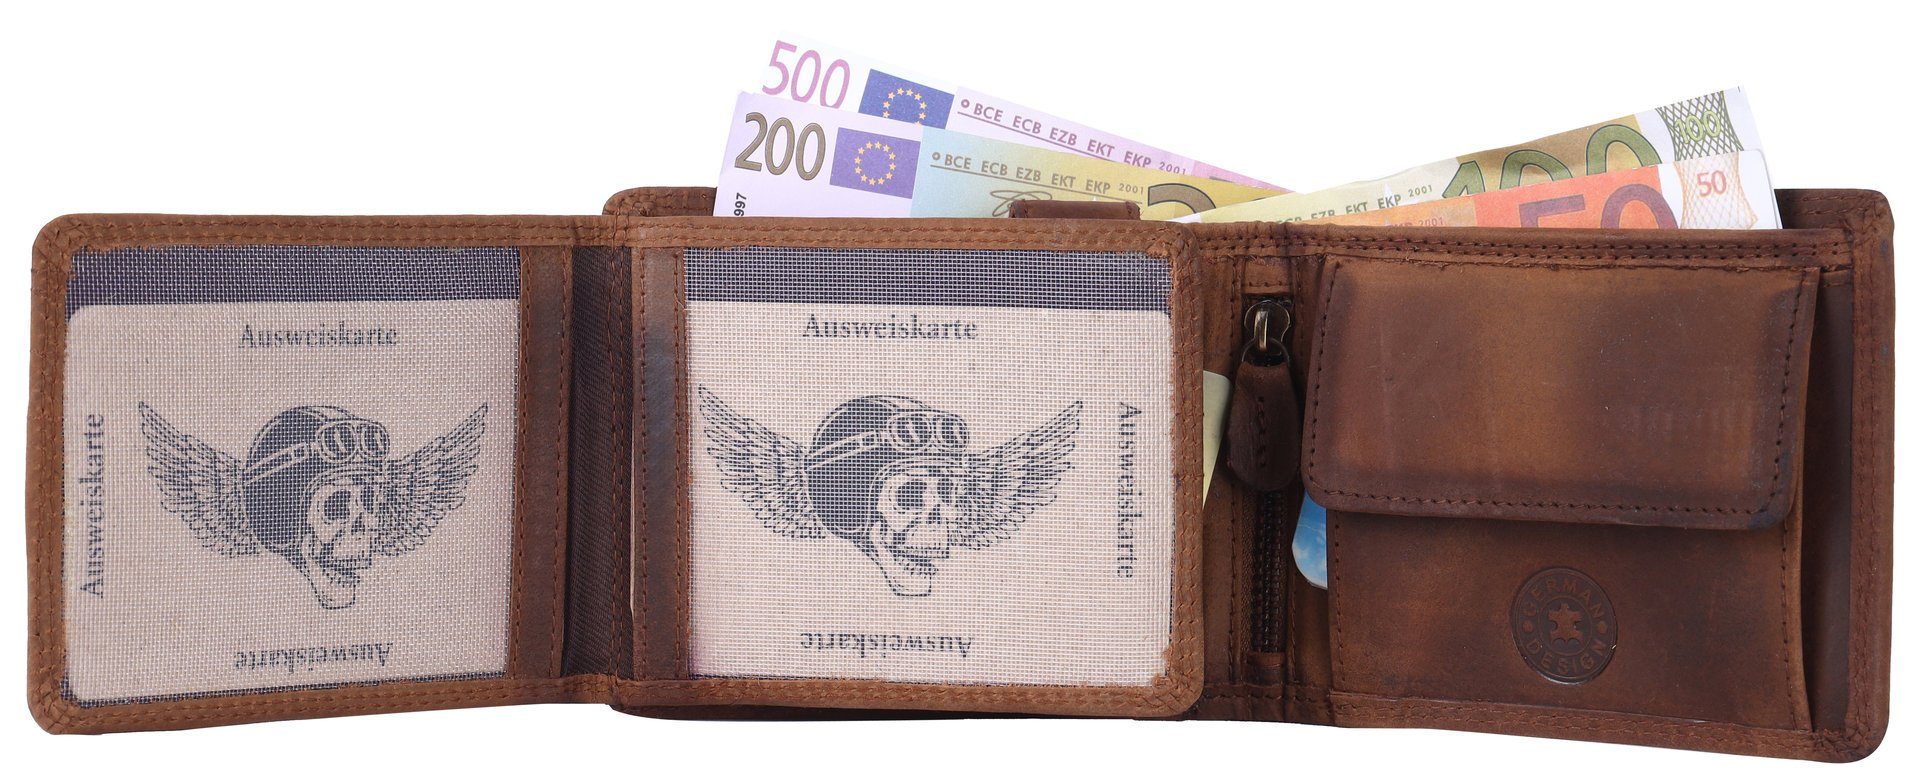 Büffelleder Lederbörse SHG Schutz mit Brieftasche Portemonnaie, RFID Börse Geldbörse Männerbörse Leder Herren Münzfach